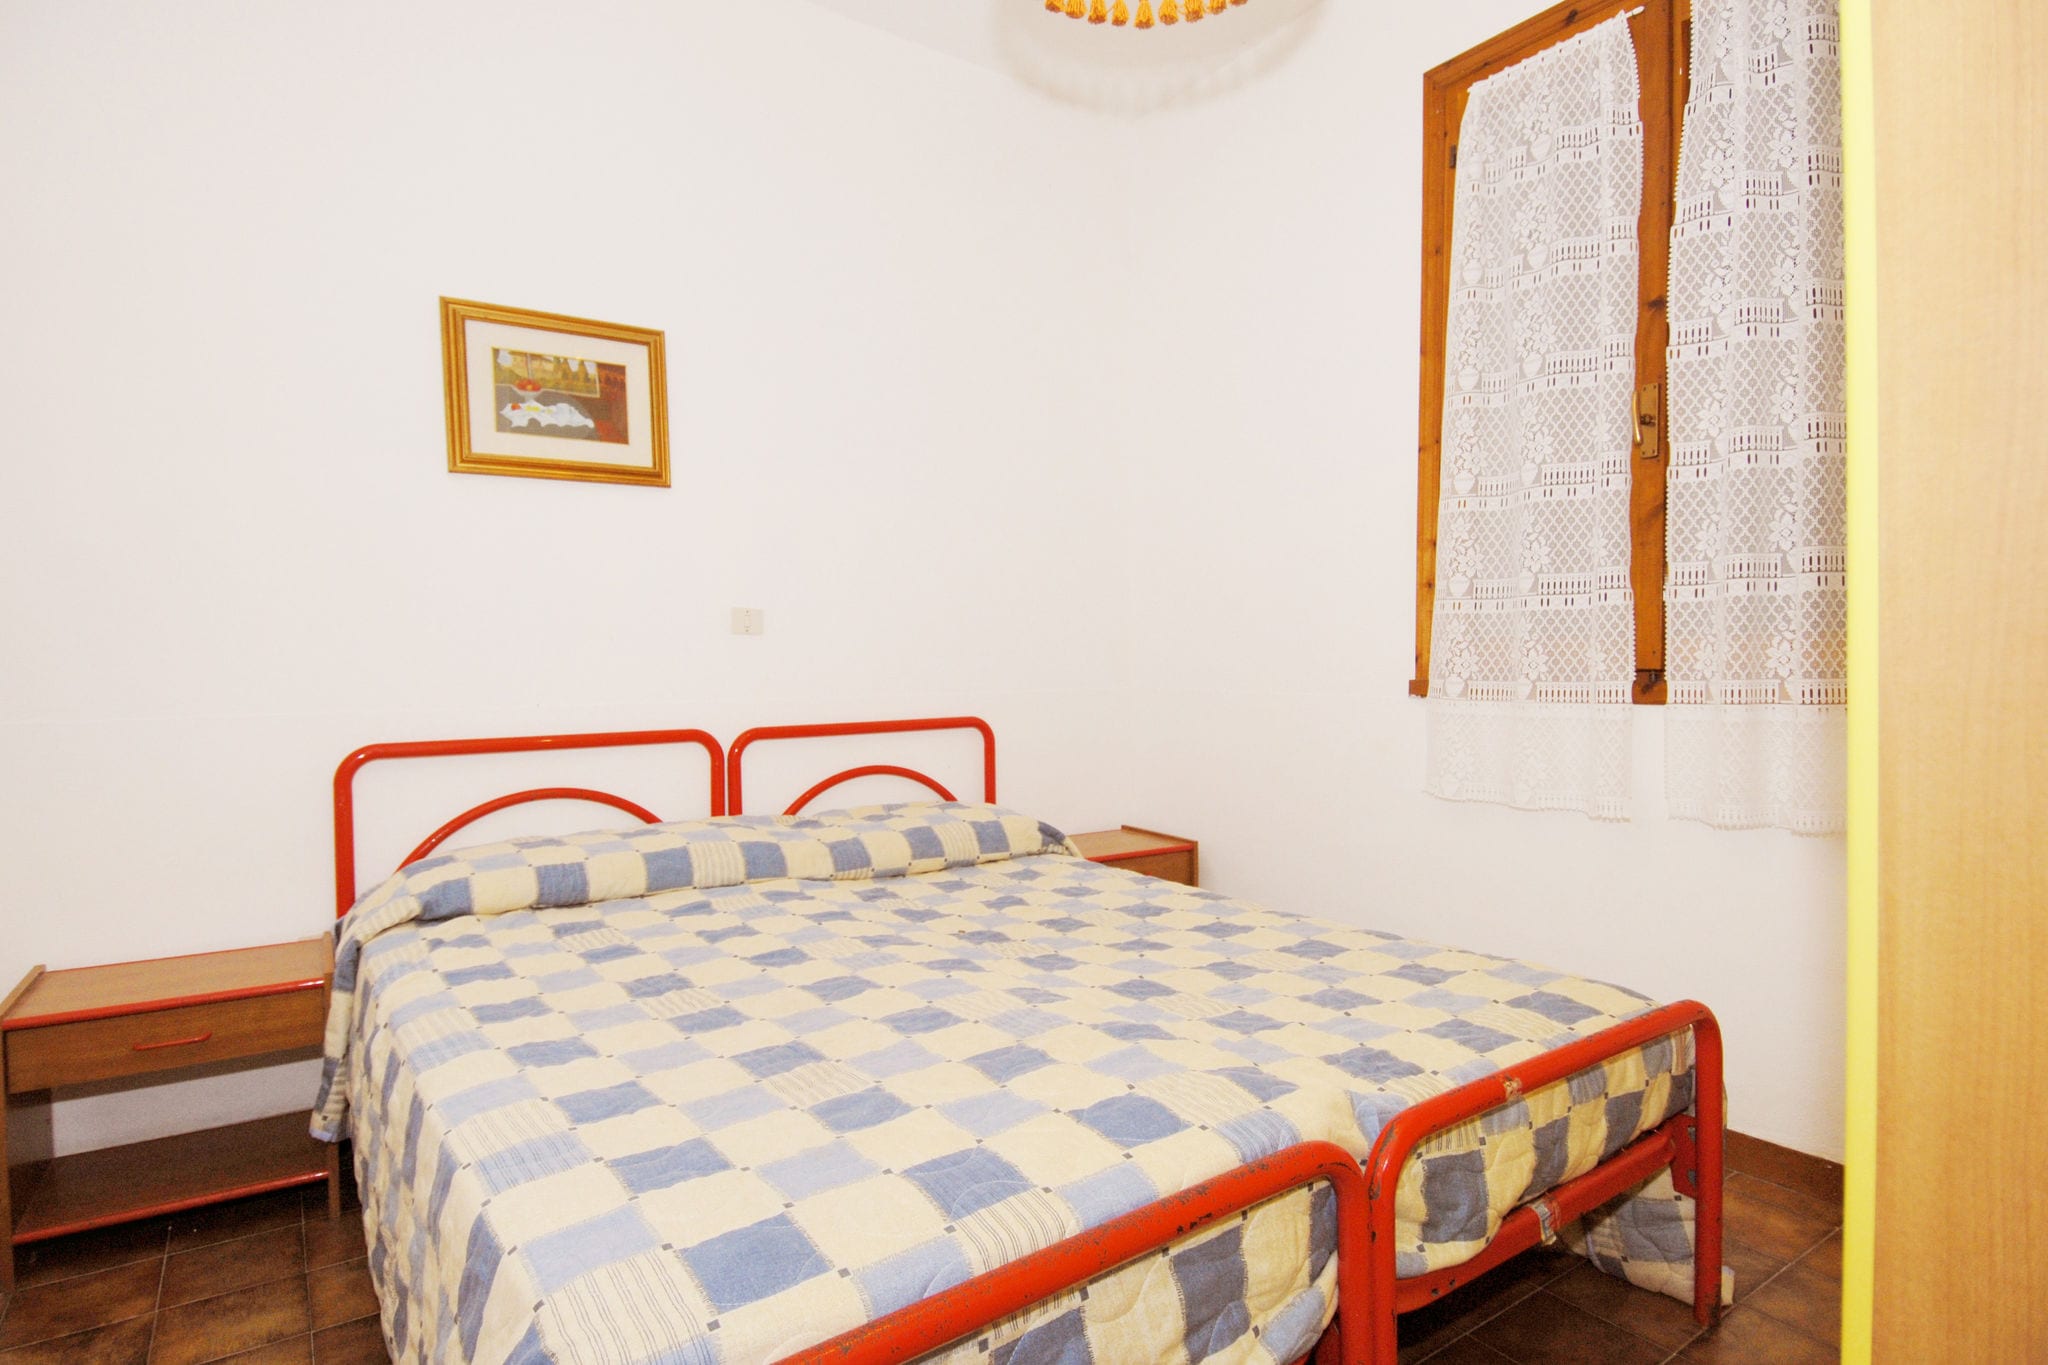 Exotisches Apartment in Rosolina Mare an der Adriaküste